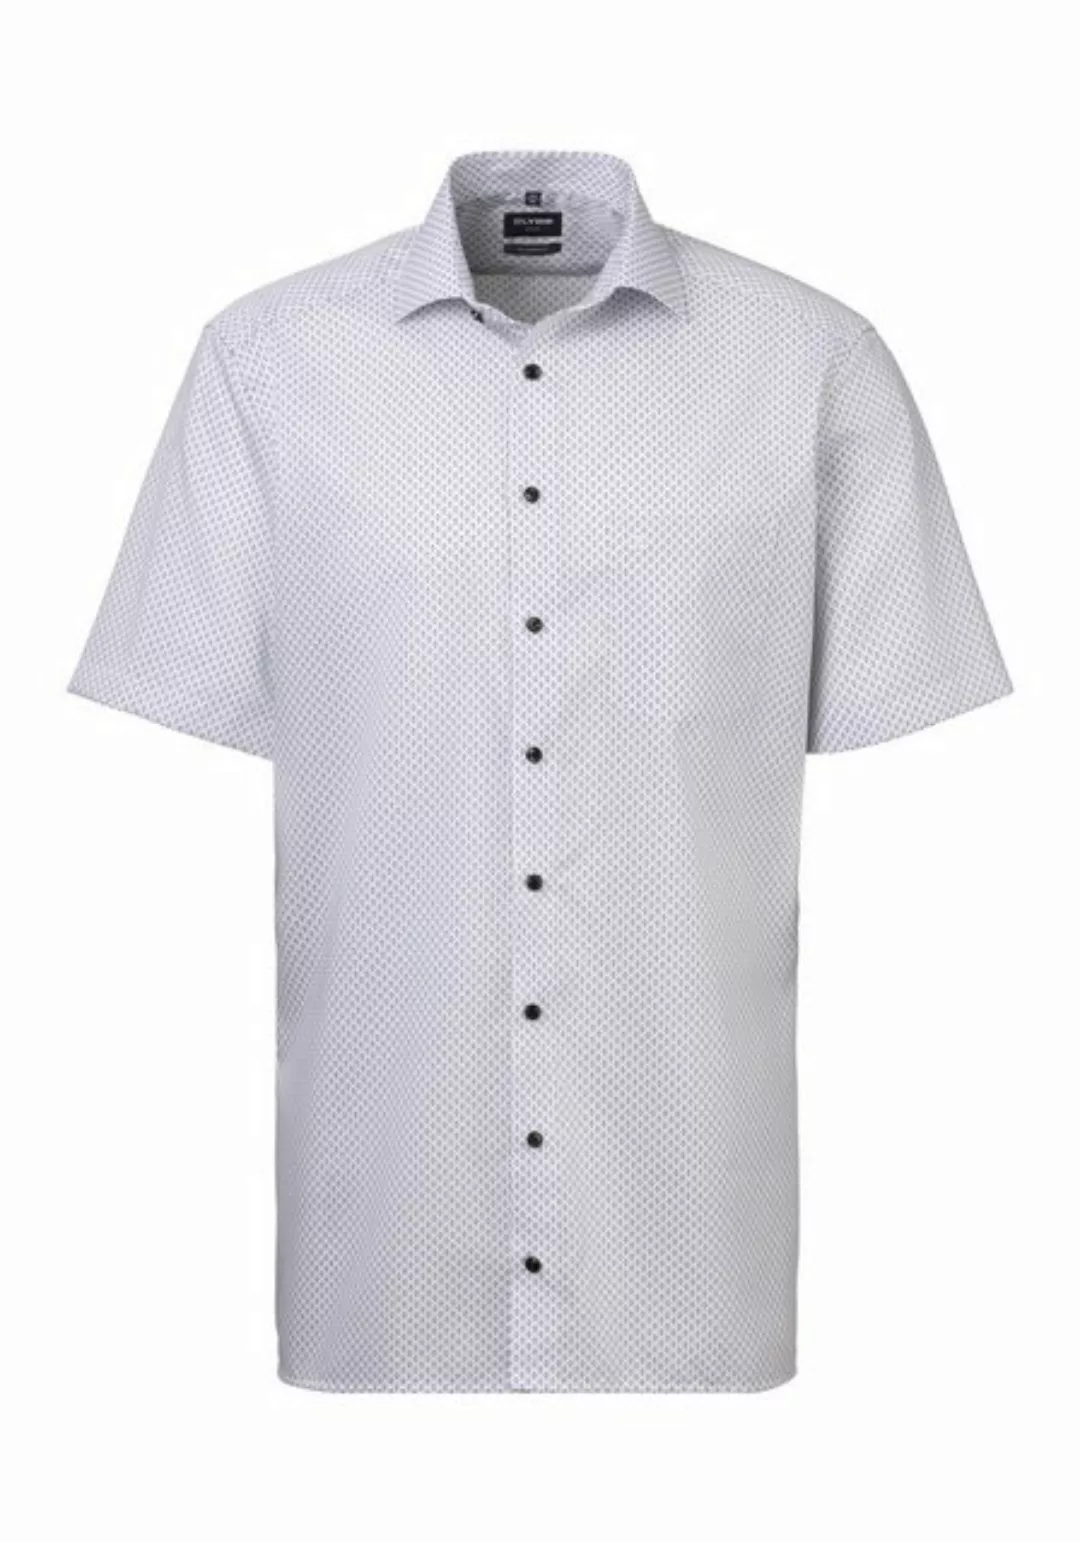 OLYMP Kurzarmhemd Luxor mit modischem Muster, Pflege- und Bügelleichtigkeit günstig online kaufen